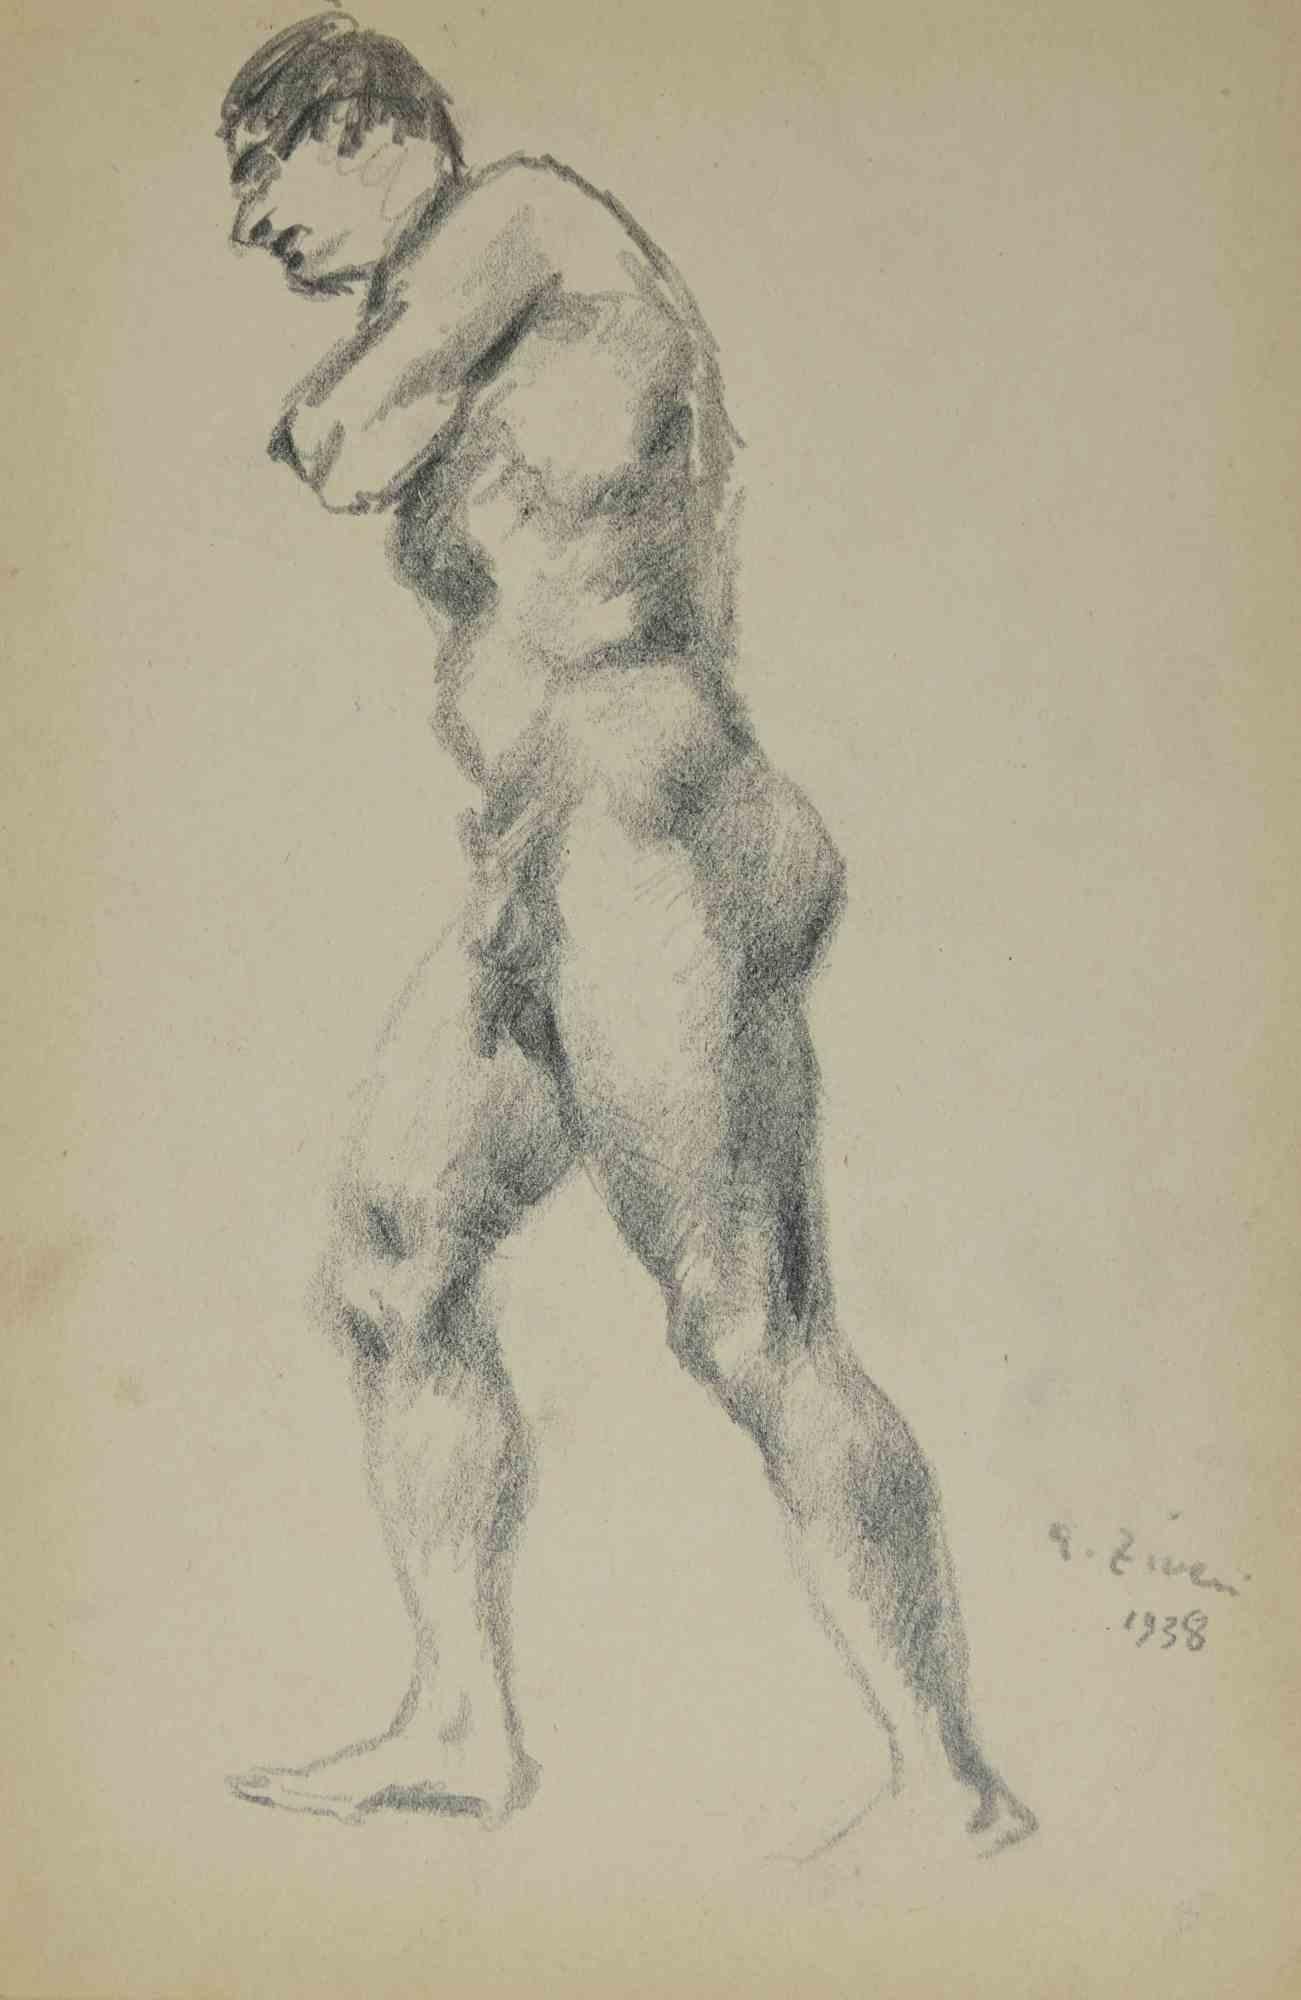 Nude ist eine Zeichnung von Alberto Ziveri aus dem Jahr 1938.

Zeichenkohle auf Papier.

Handsigniert und datiert.

In gutem Zustand mit leichten Stockflecken.

Das Kunstwerk wird durch geschickte Striche meisterhaft dargestellt.

Alberto Ziveri